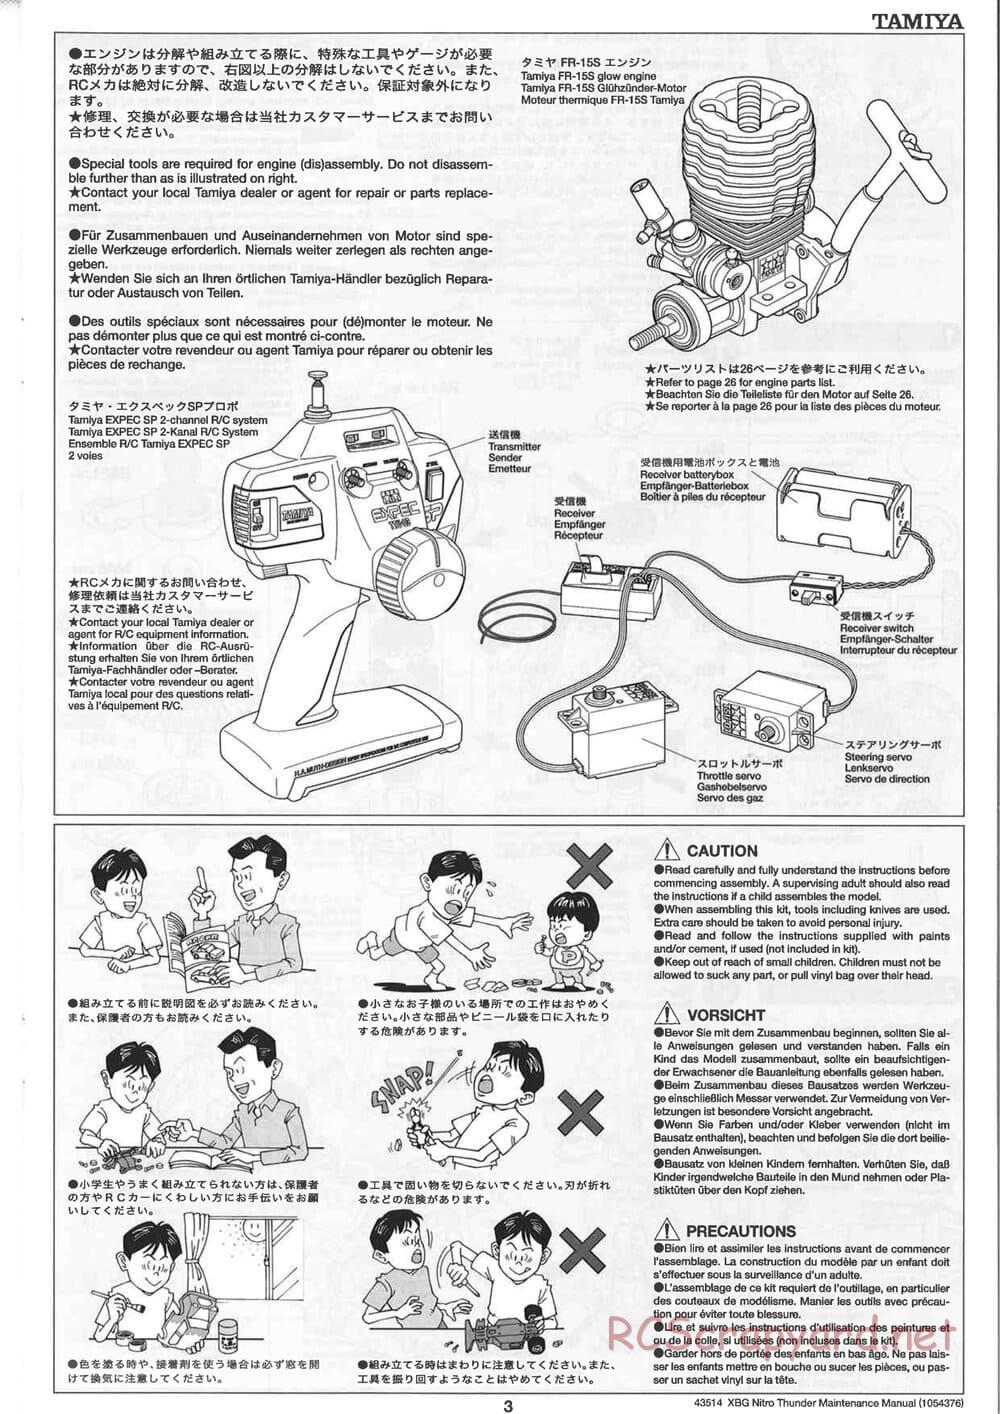 Tamiya - Nitro Thunder - NDF-01 Chassis - Manual - Page 3